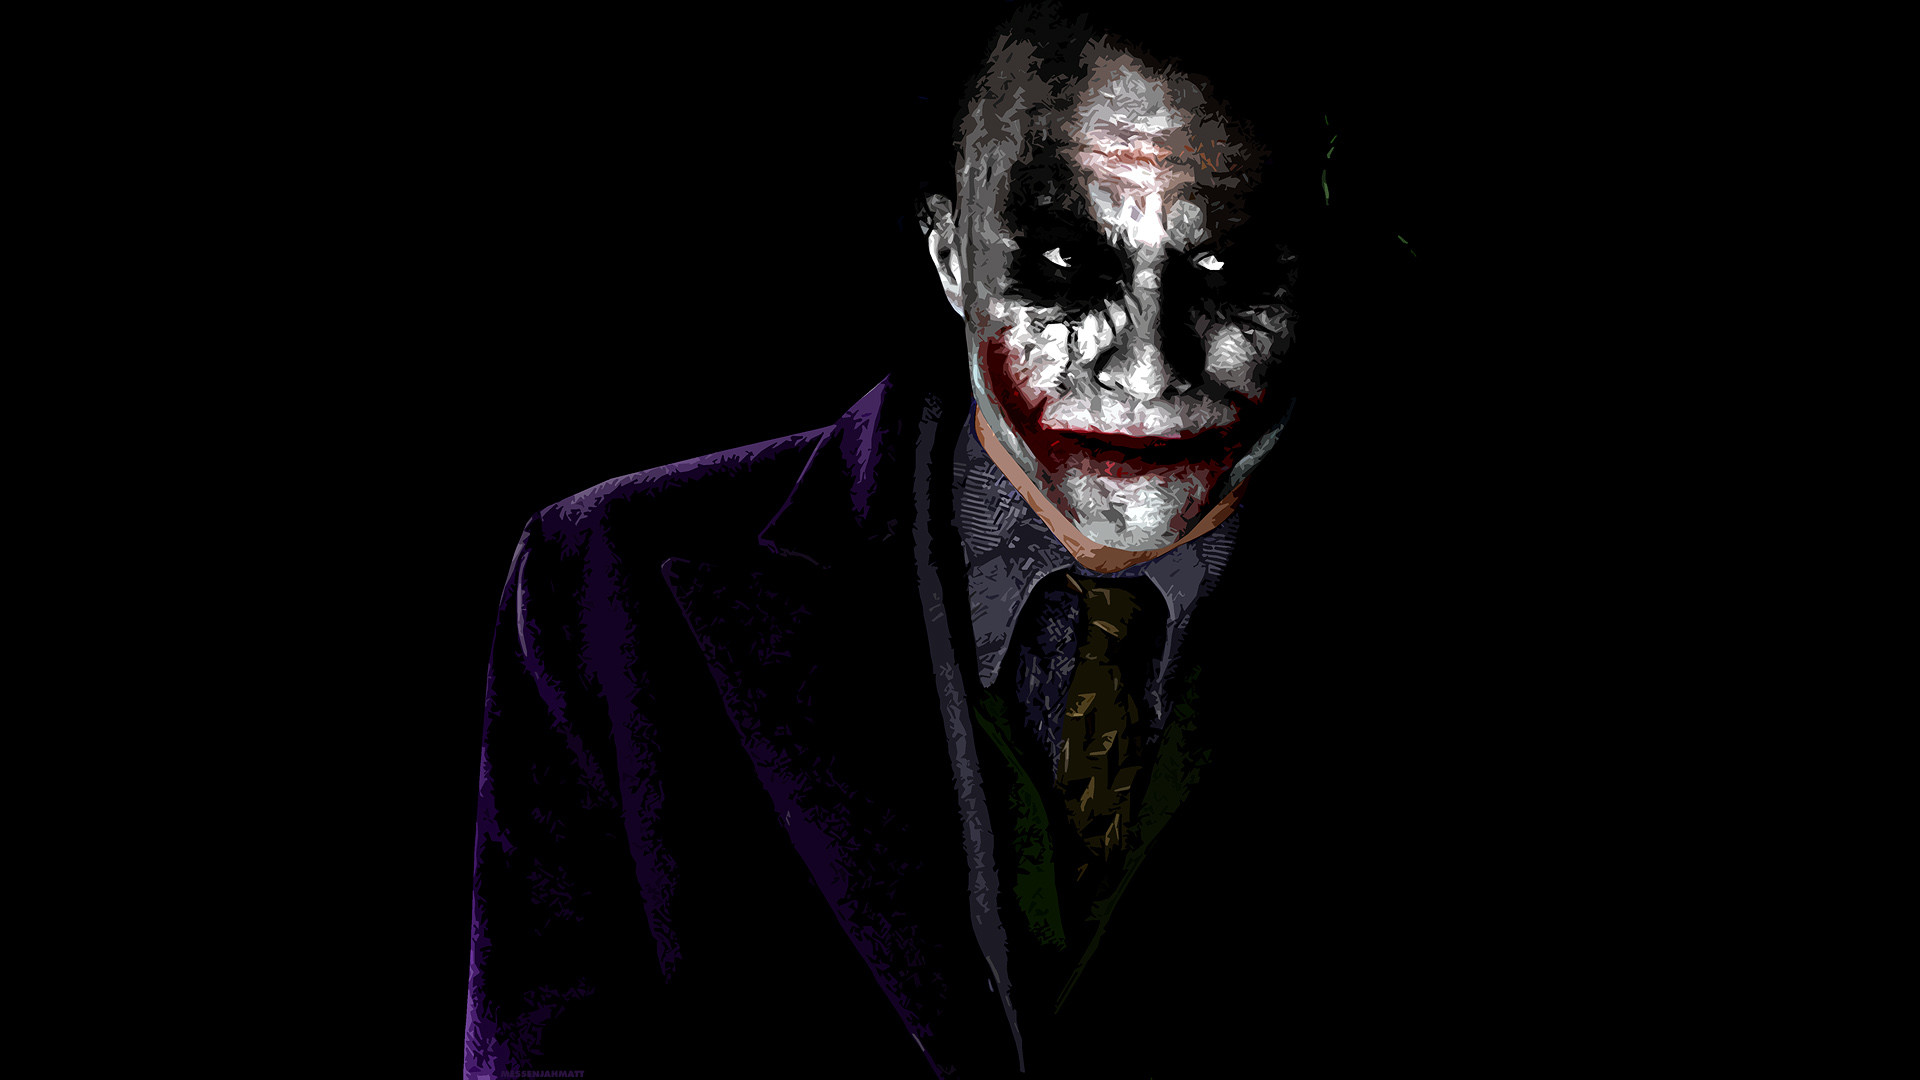 Joker Hd Wallpapers 1080P – HD Wallpapers Pretty